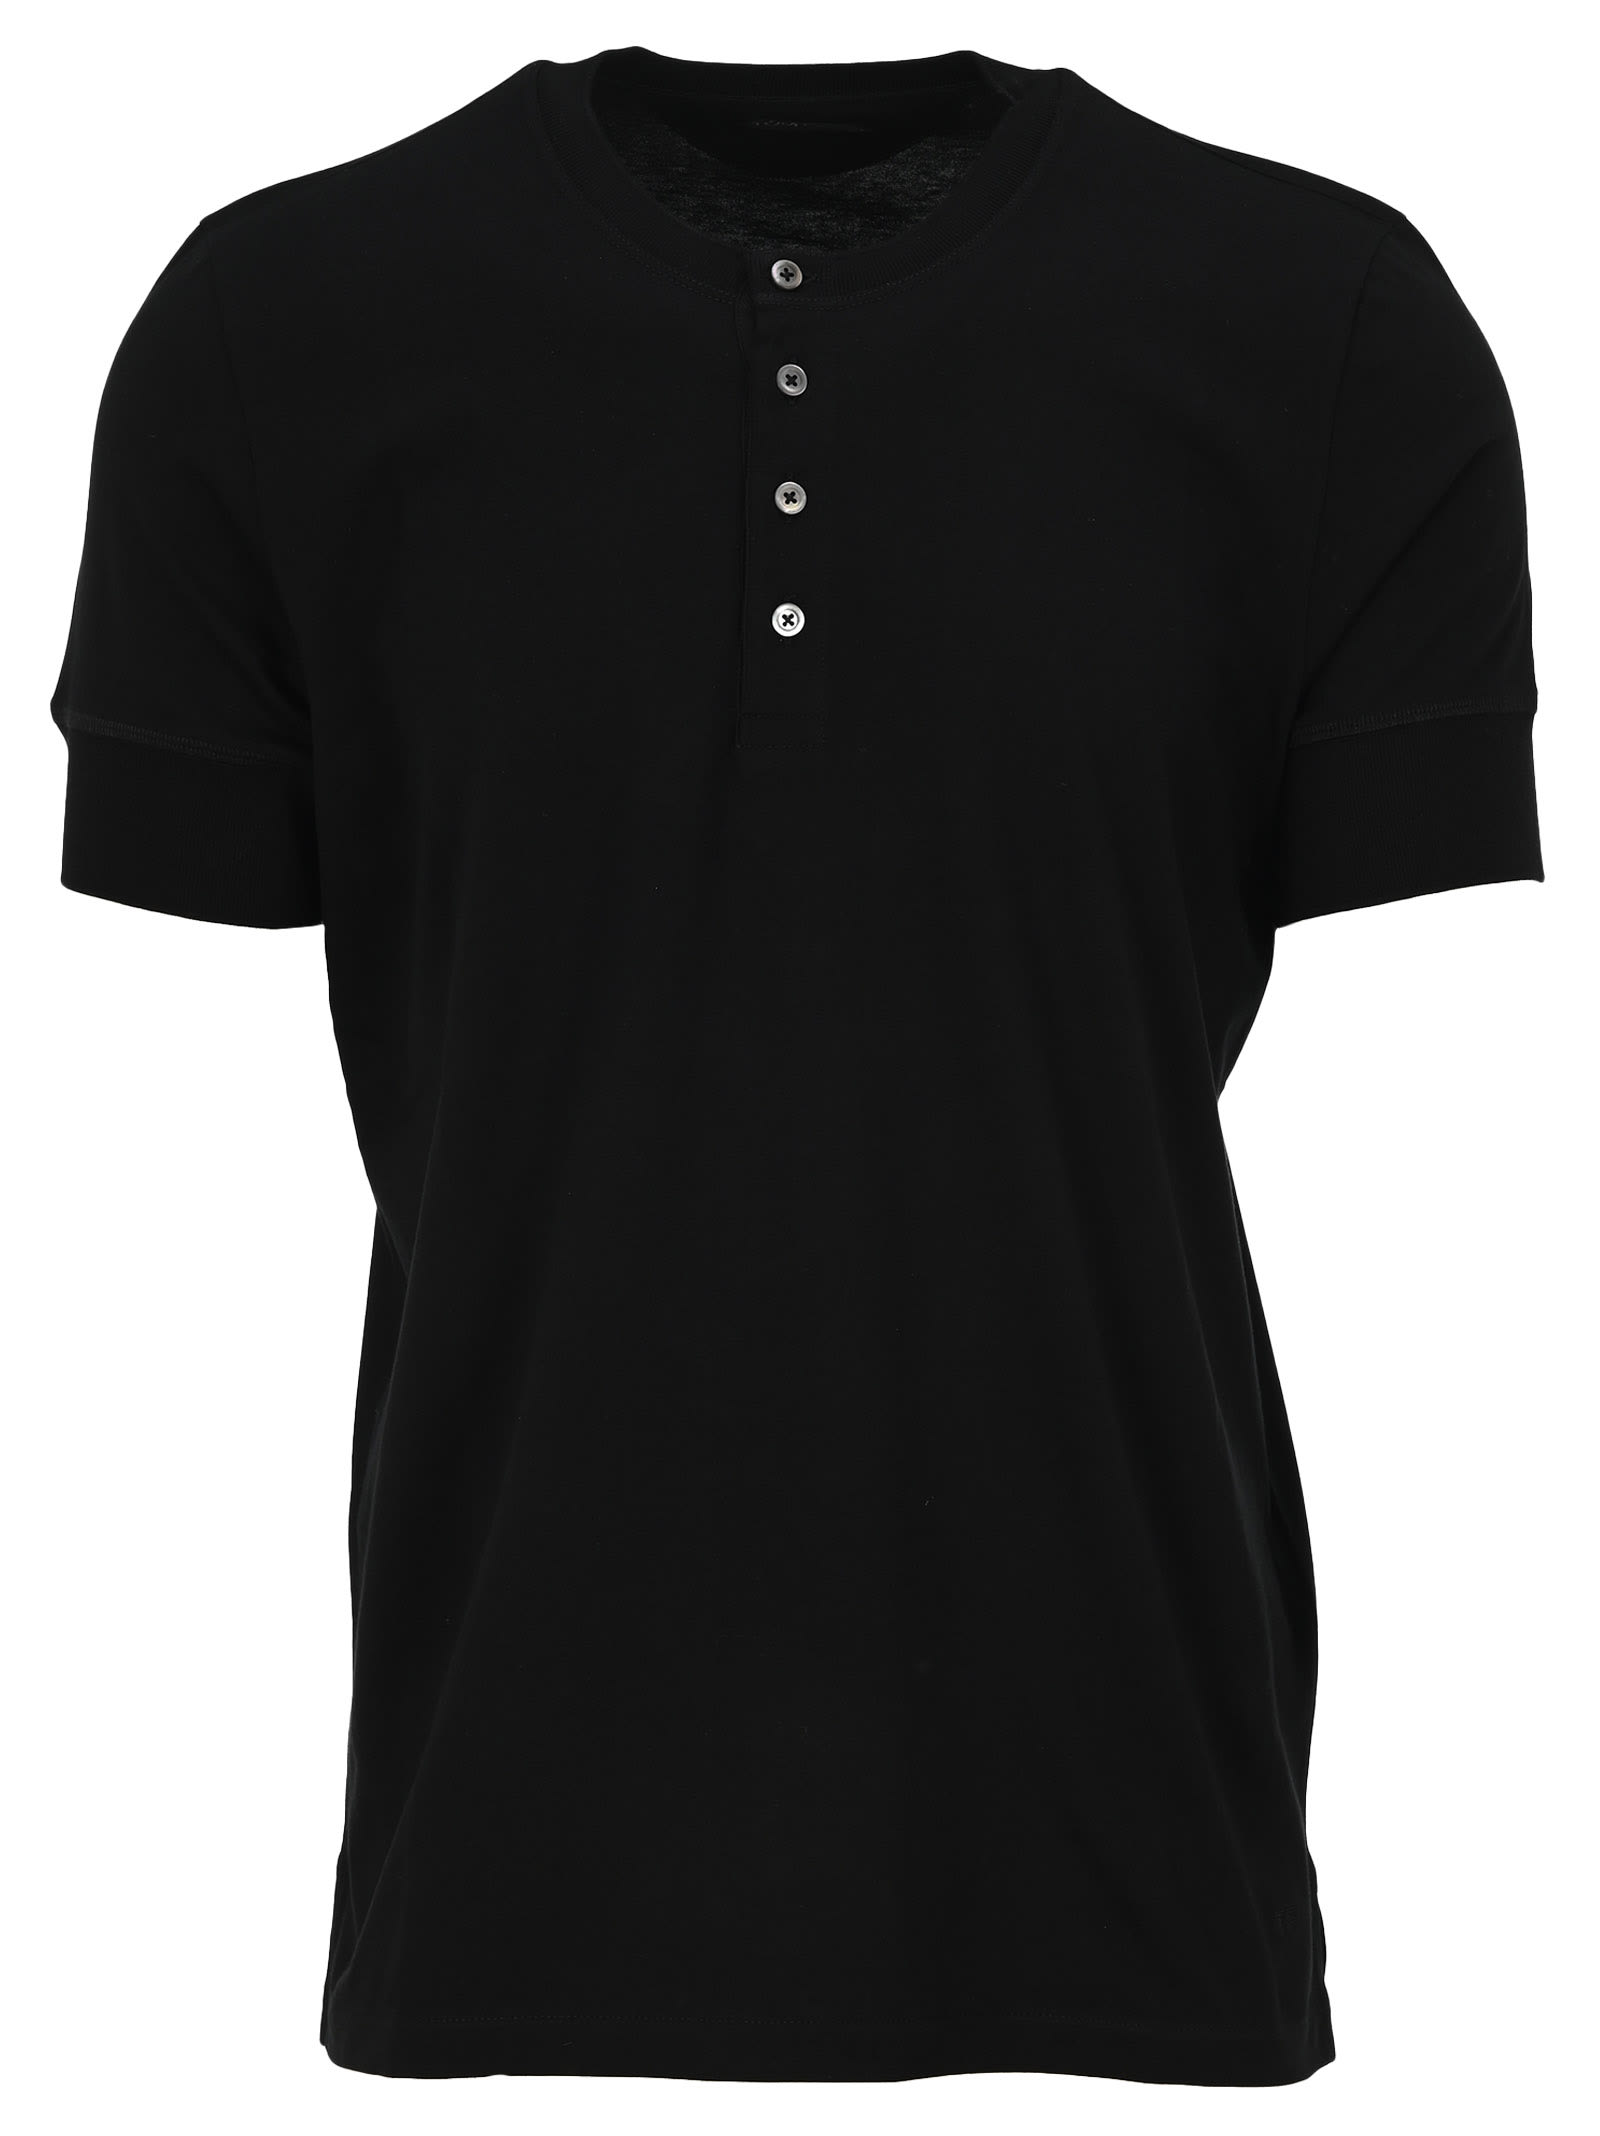 Tom Ford Henley T-shirt In Black | ModeSens